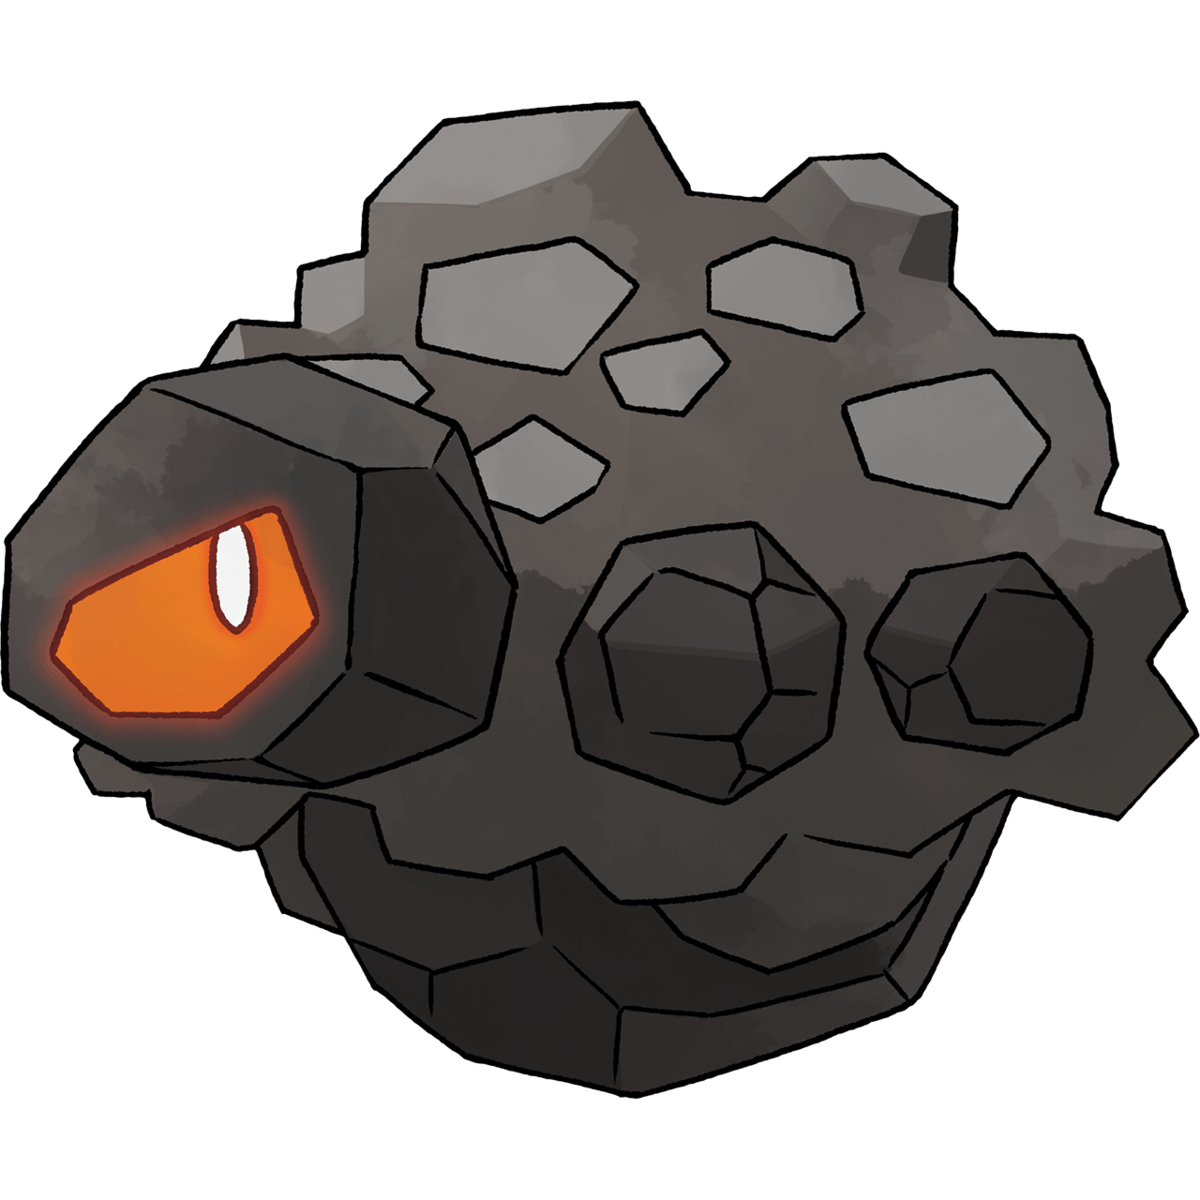 Rolycoly (Pokémon), The Community Driven